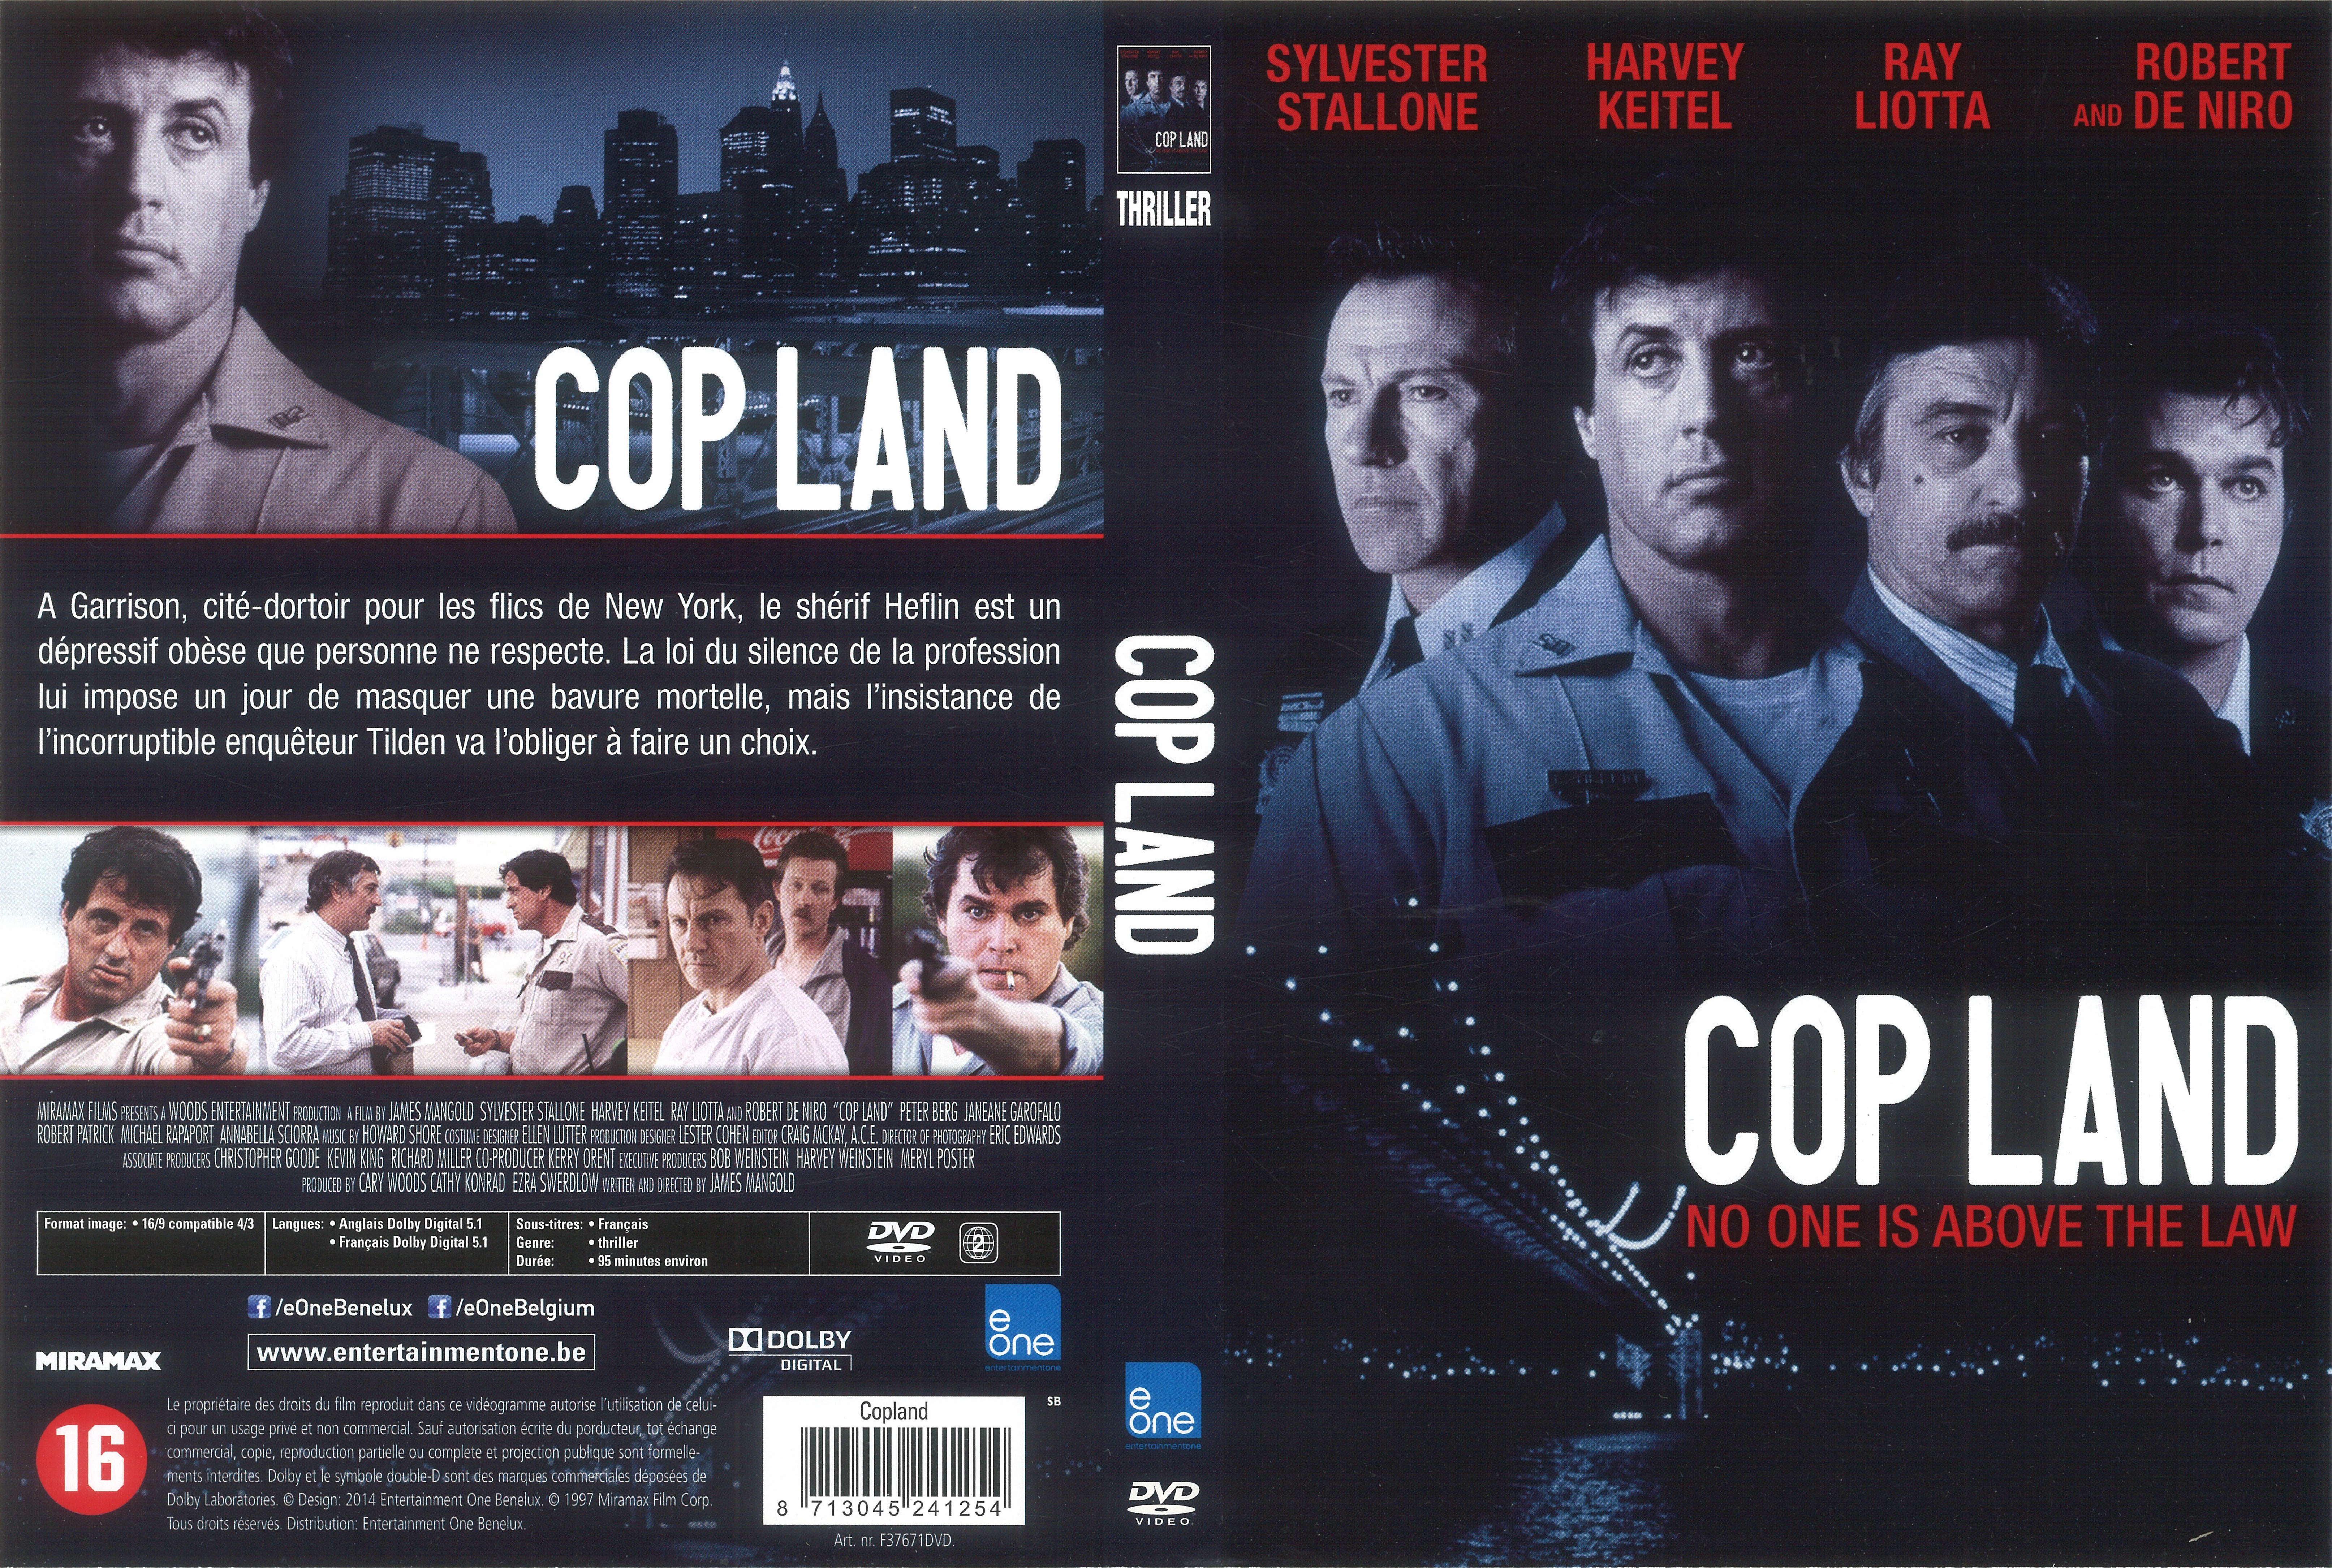 Jaquette DVD Copland v4